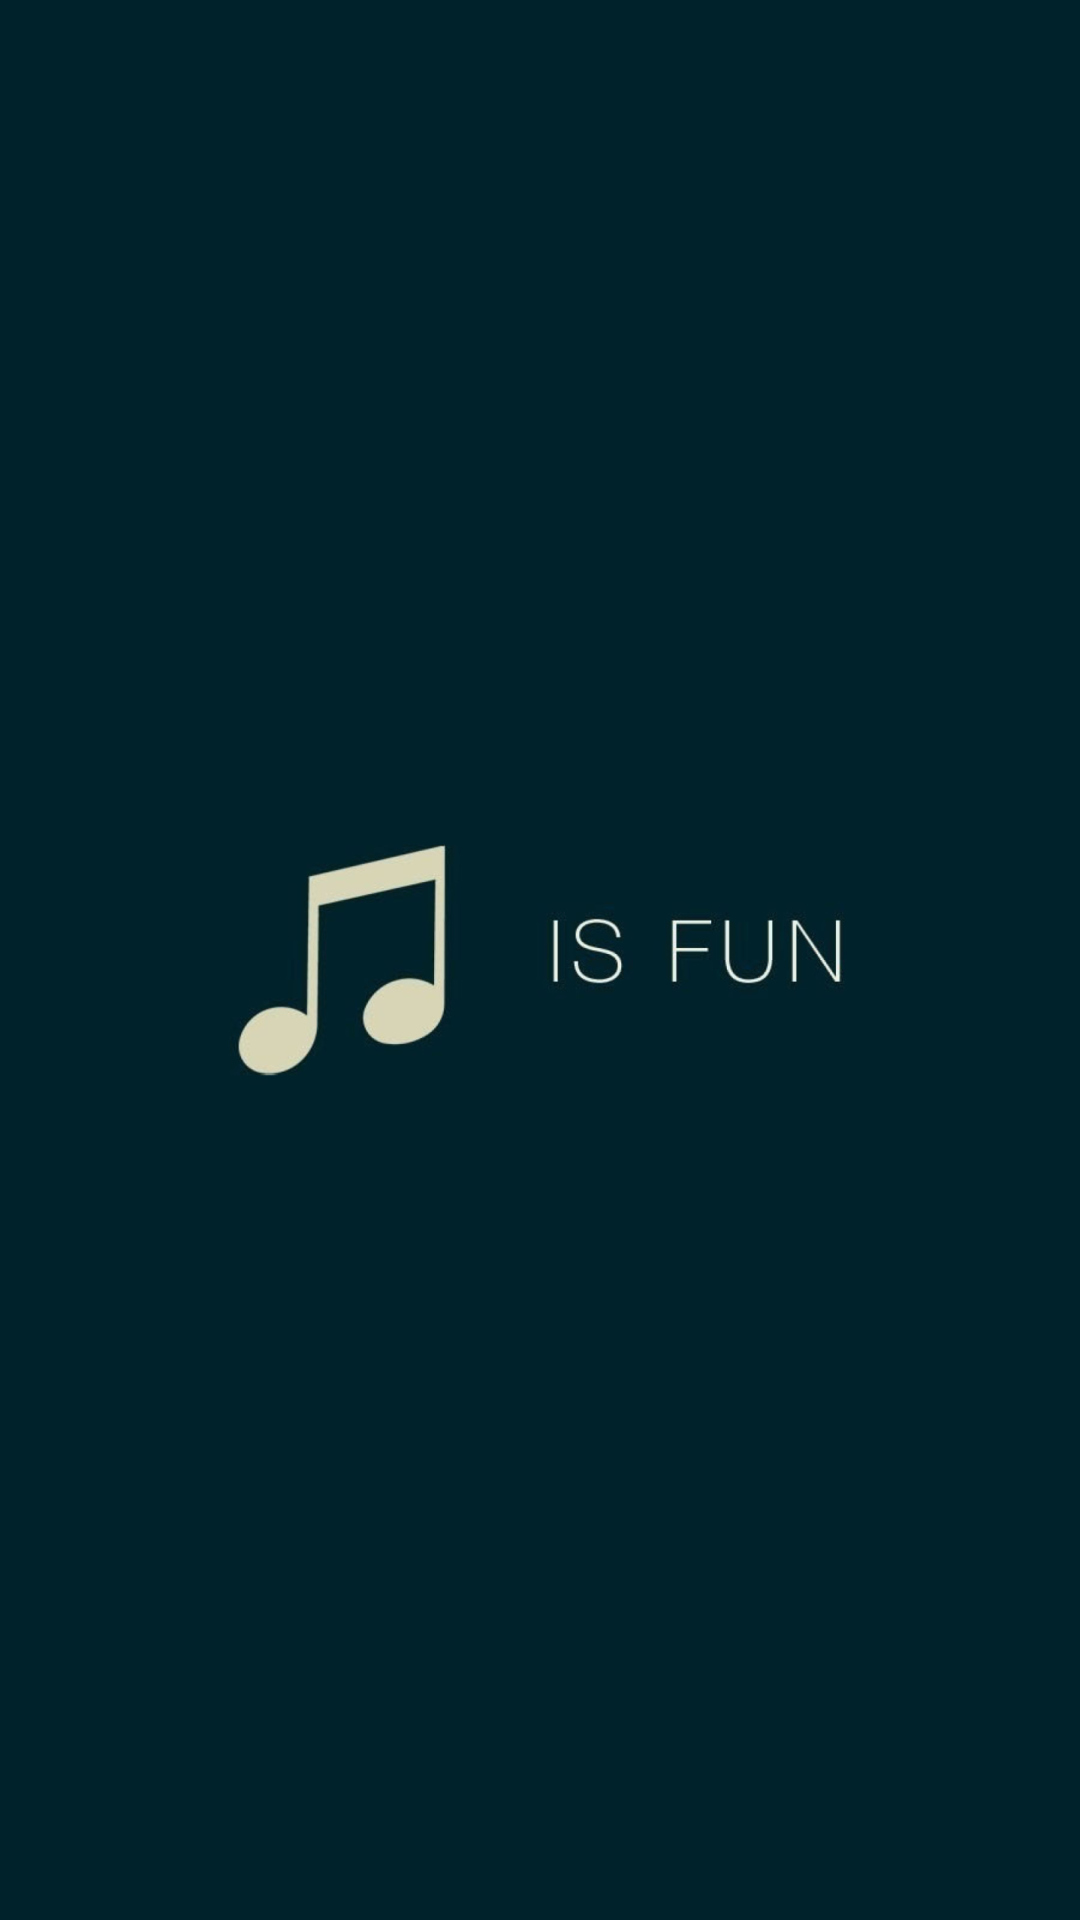 Sfondi Music Is Fun 1080x1920